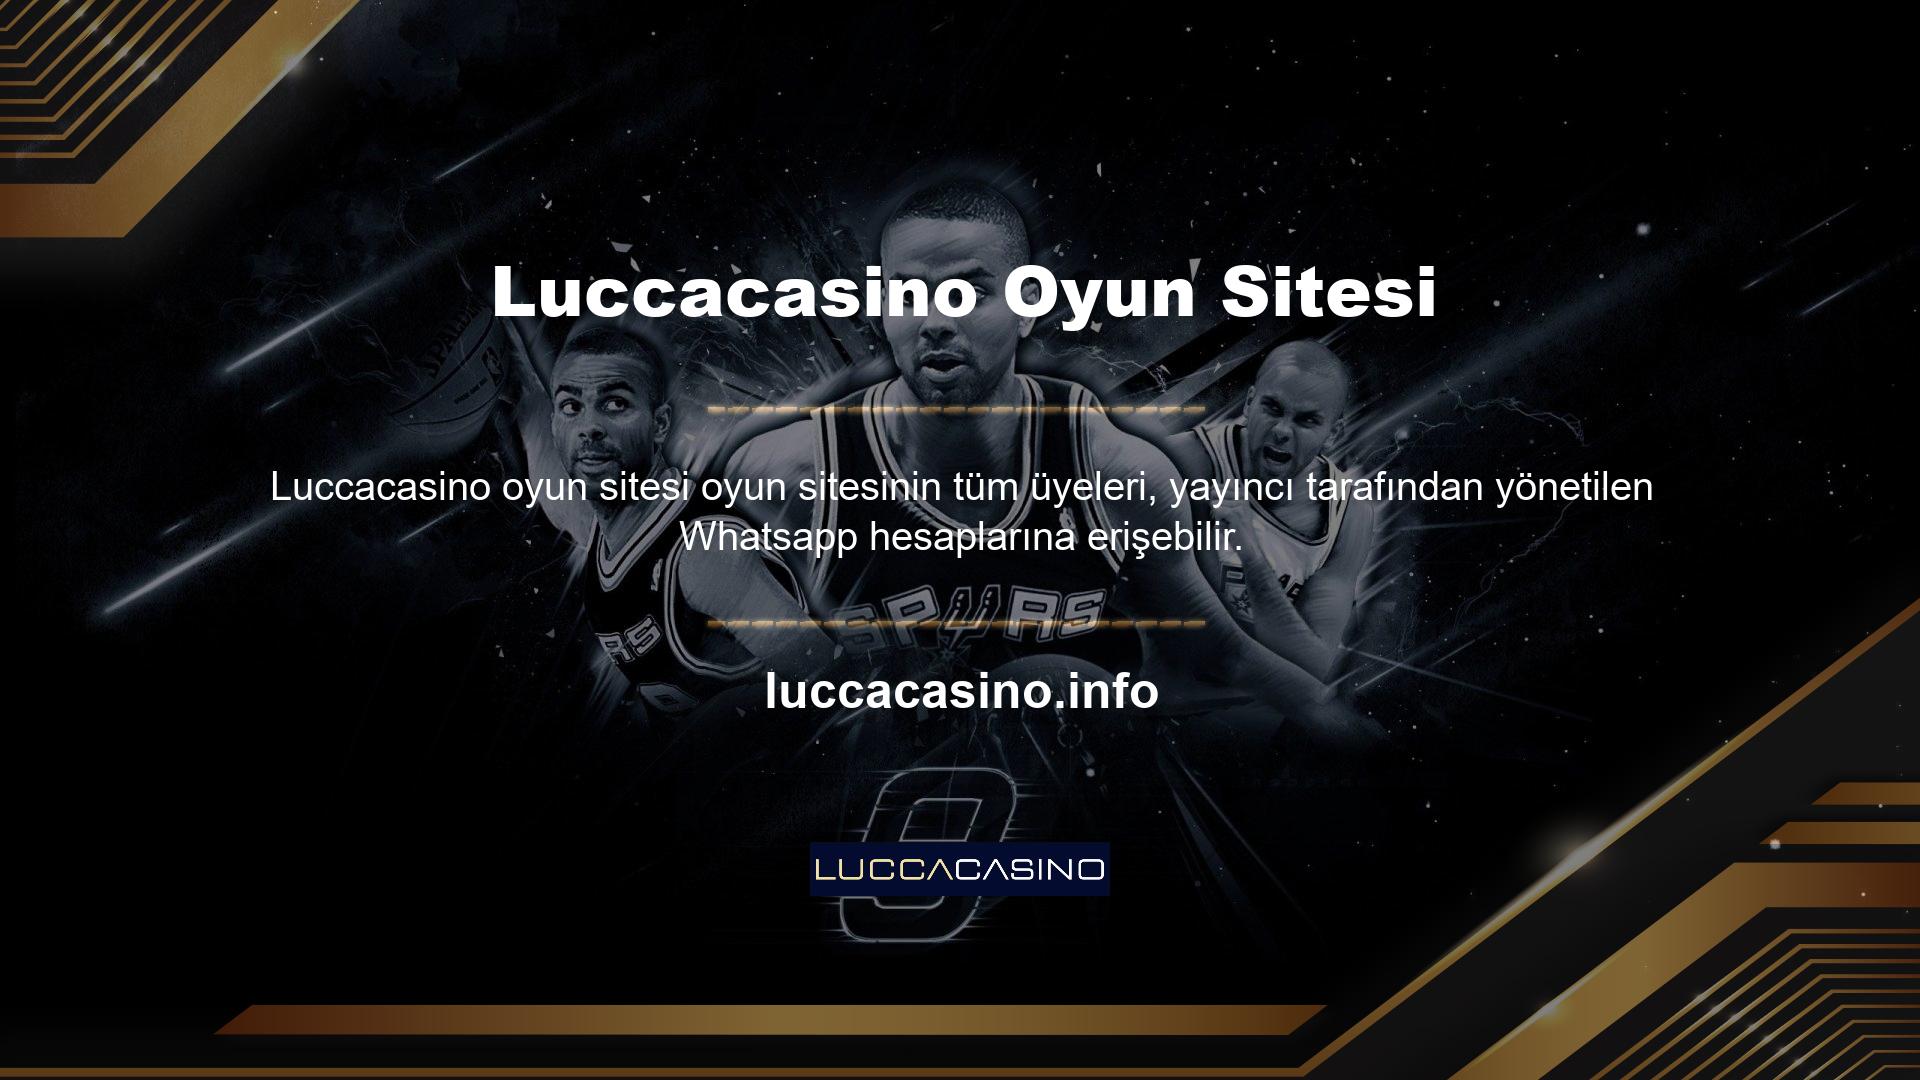 Bu hesaba katılabilmeniz için önce Luccacasino Gaming üyeliğinizin olması gerekir